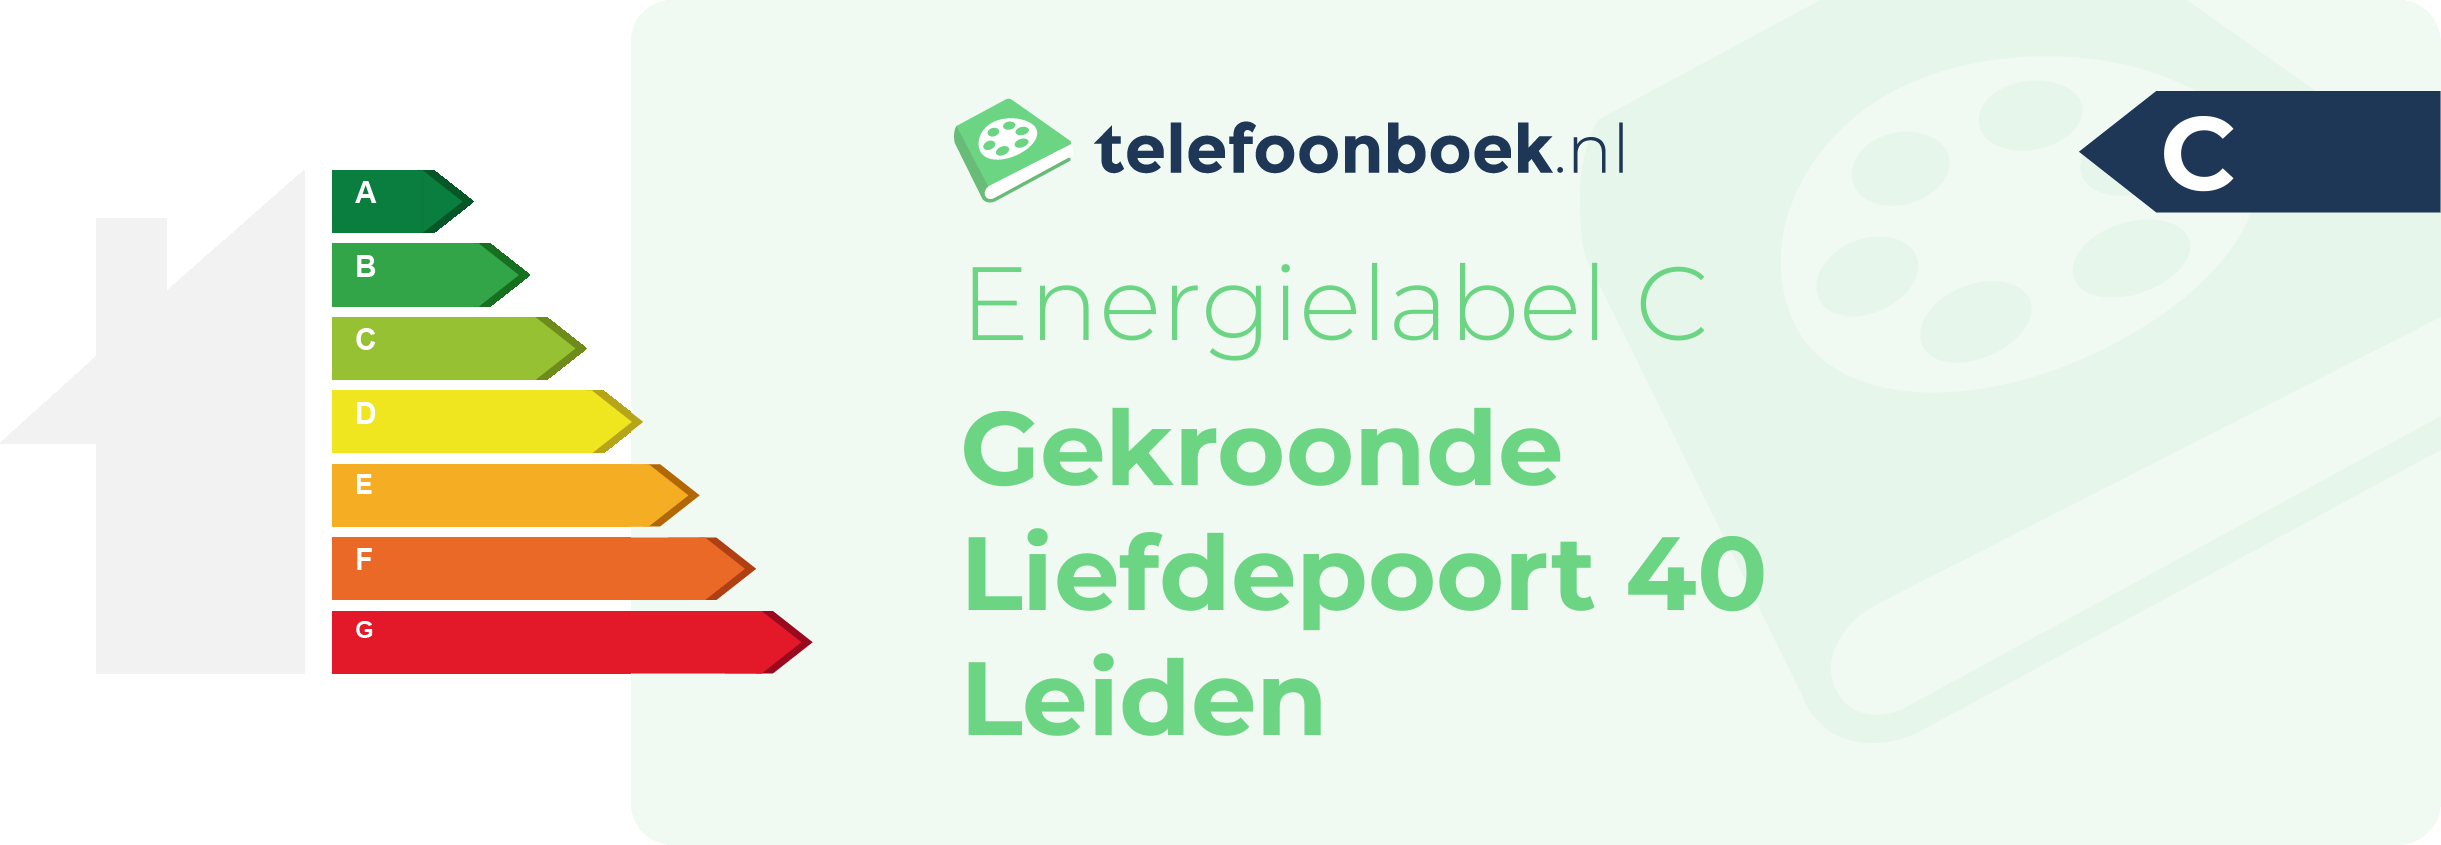 Energielabel Gekroonde Liefdepoort 40 Leiden